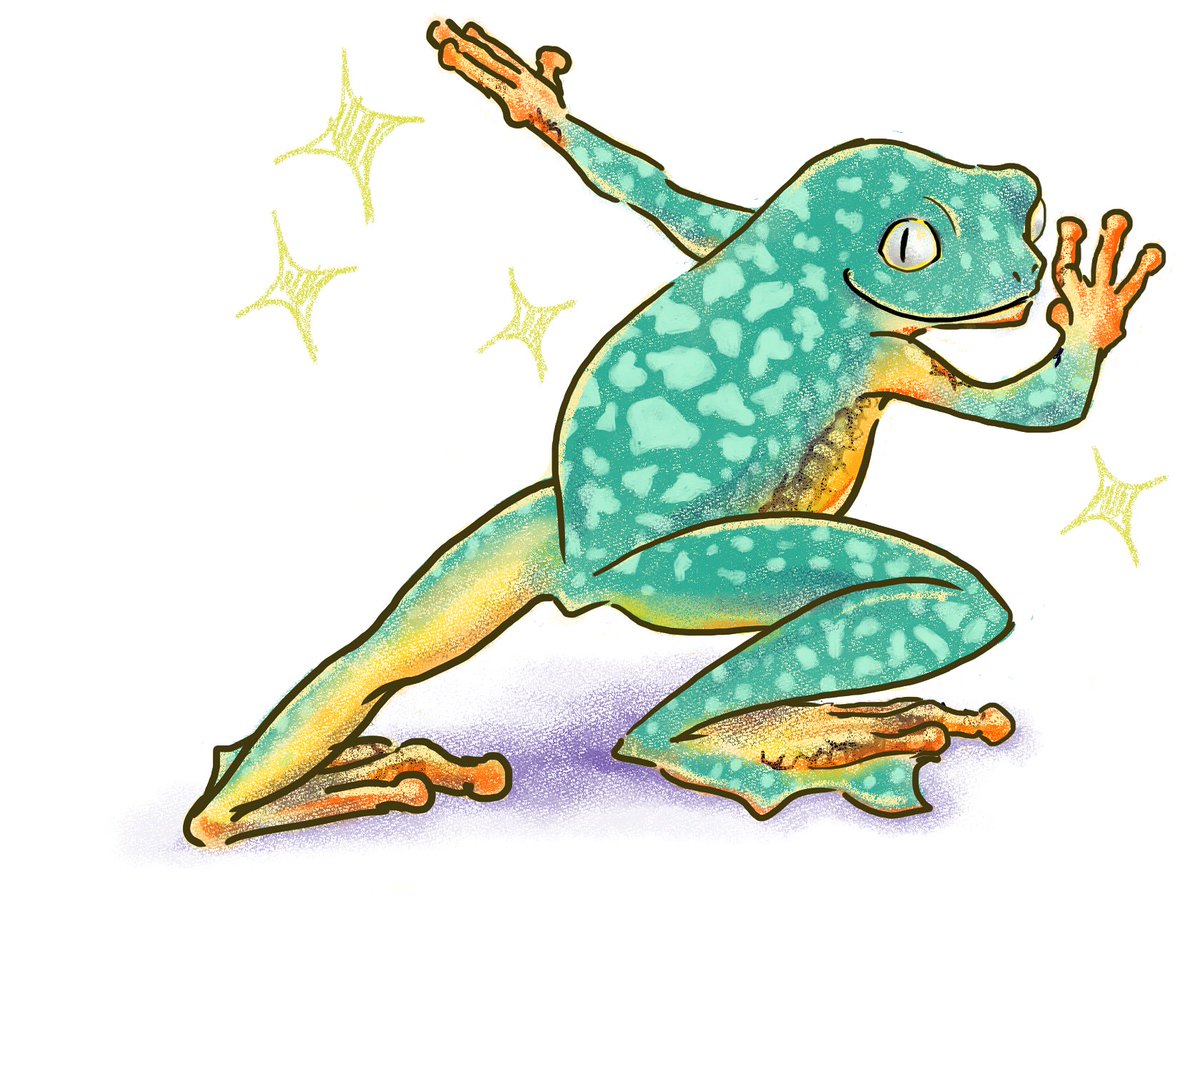 L Amaga Lineスタンプ 絵文字販売中 ケンランフリンジアマガエル ってなんだ とってもかわいいぞ 可愛すぎて描いた いや スタンプ作れよ 笑 オシャレな色とフリフリに反して鋭い目付き たまらないわ フリンジアマガエル カエル Frog